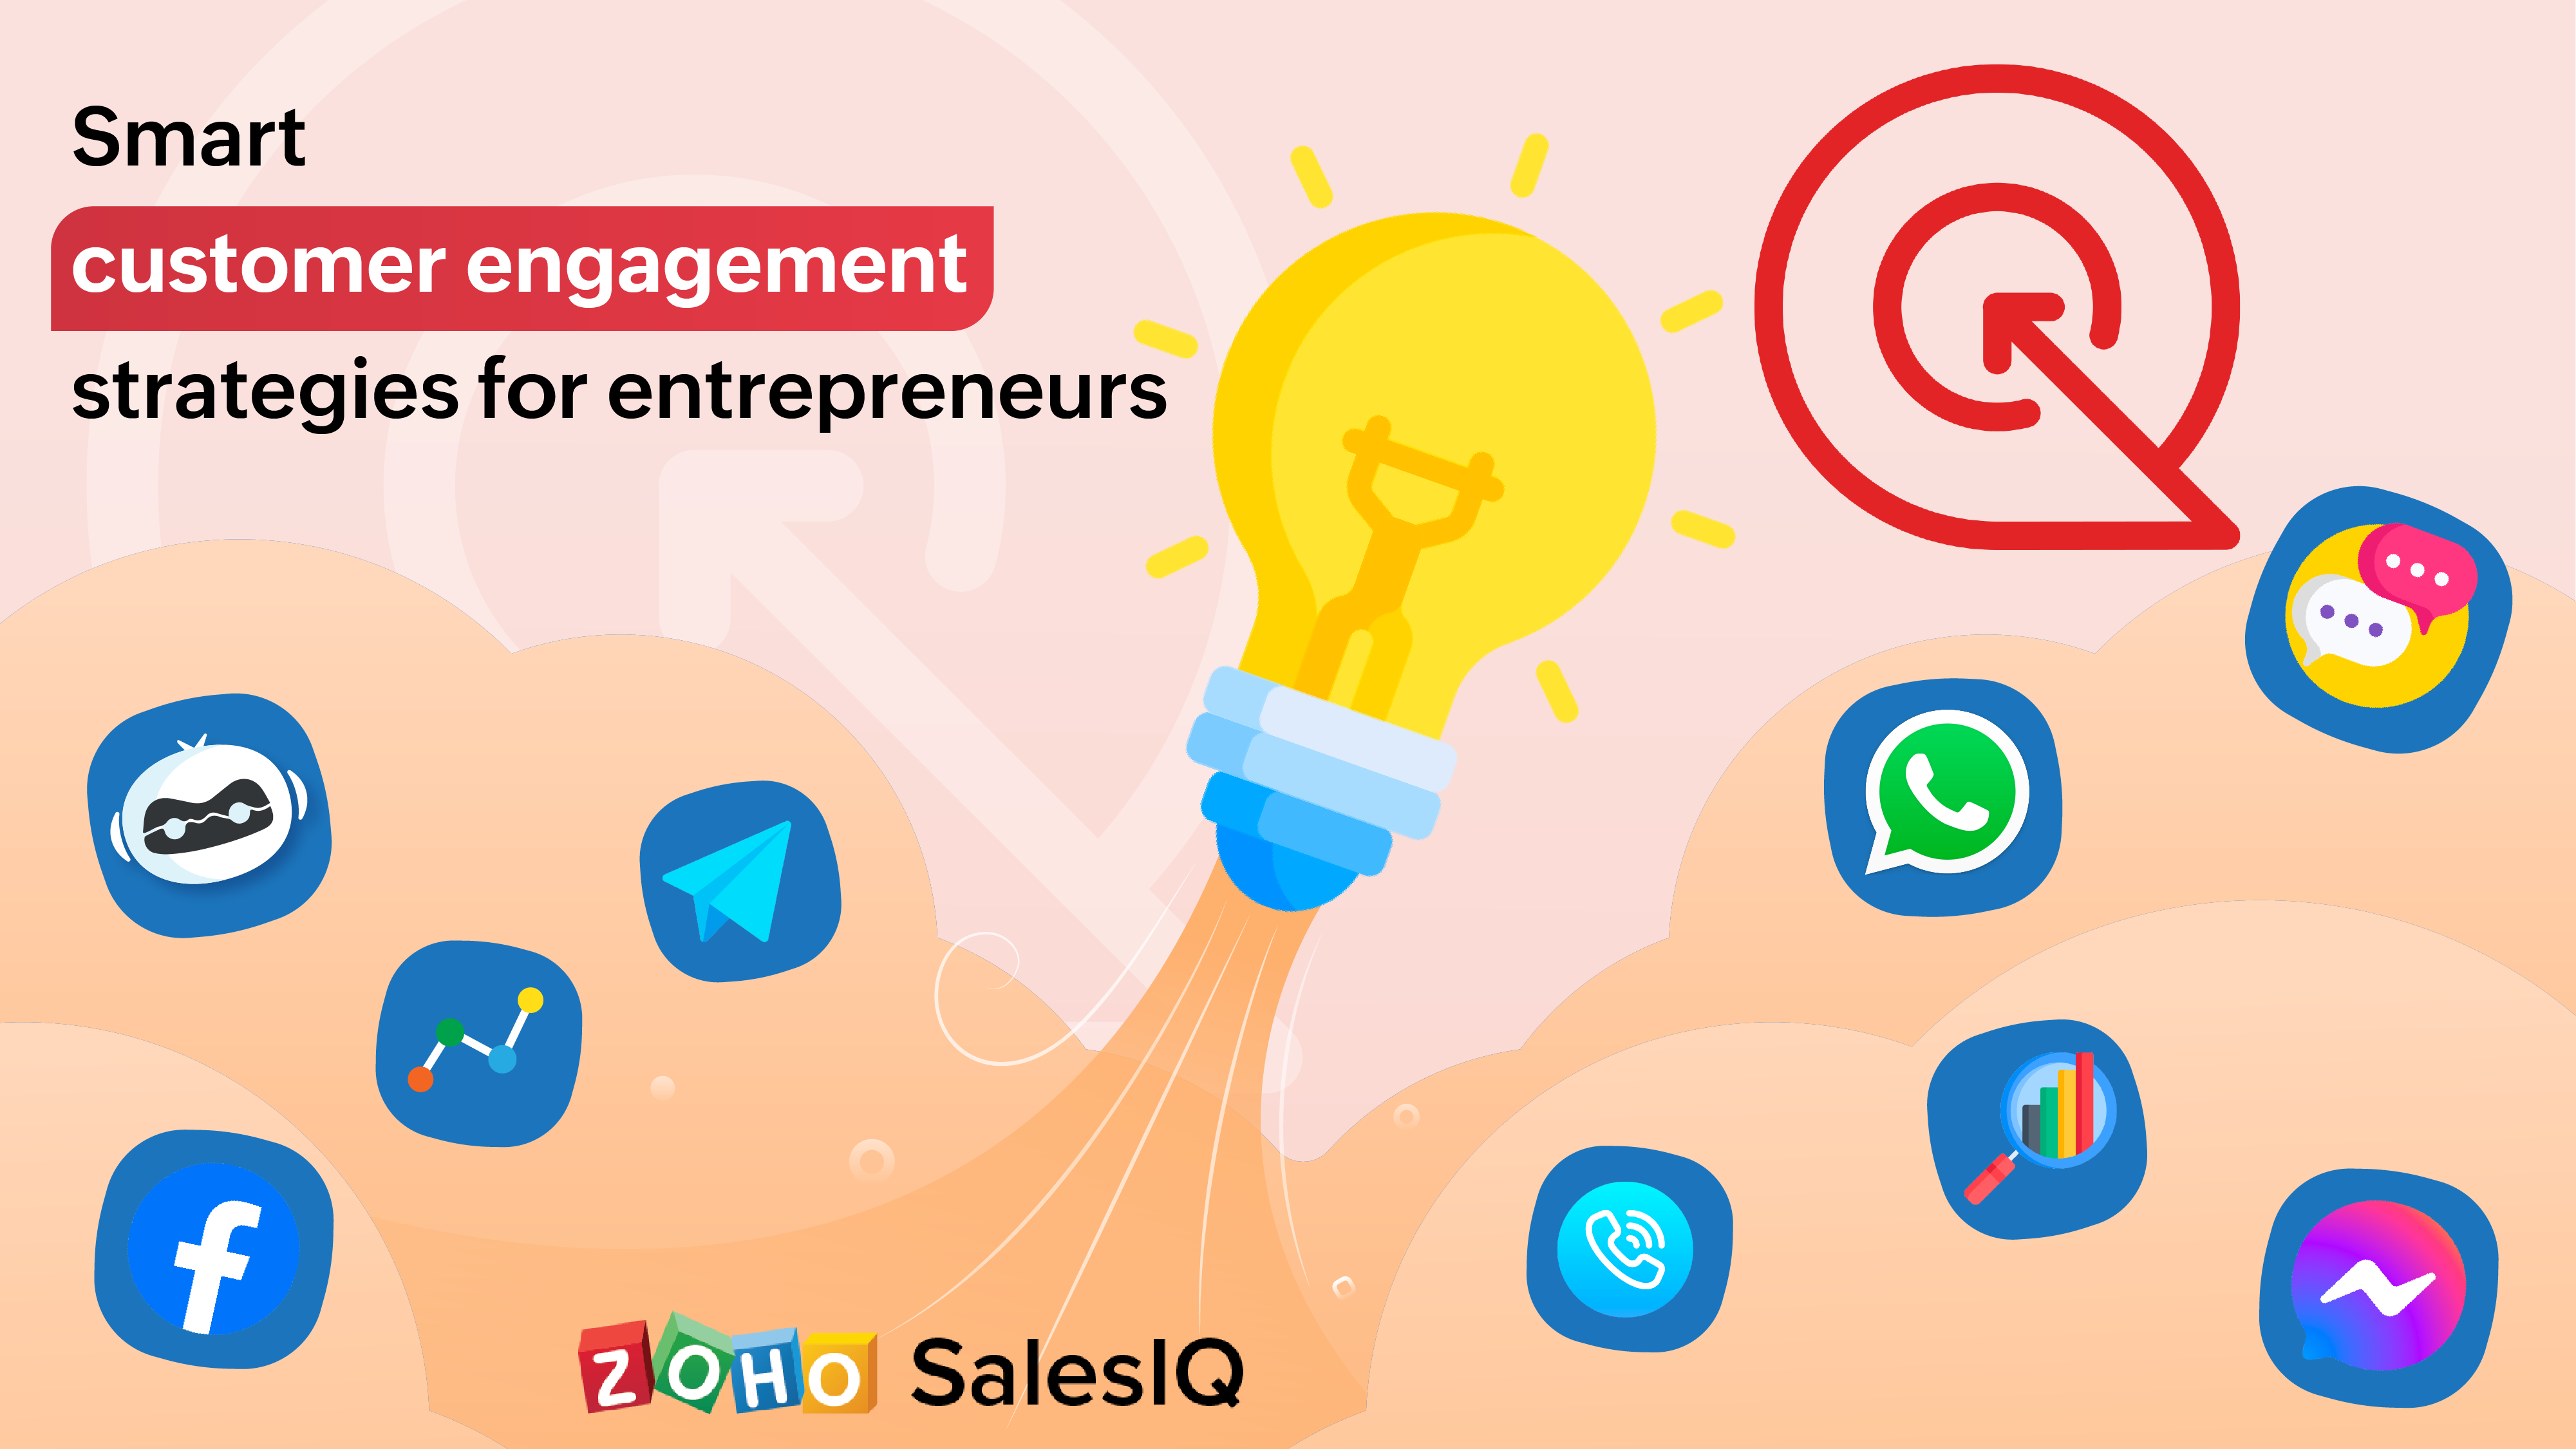 9 smart customer engagement strategies for entrepreneurs